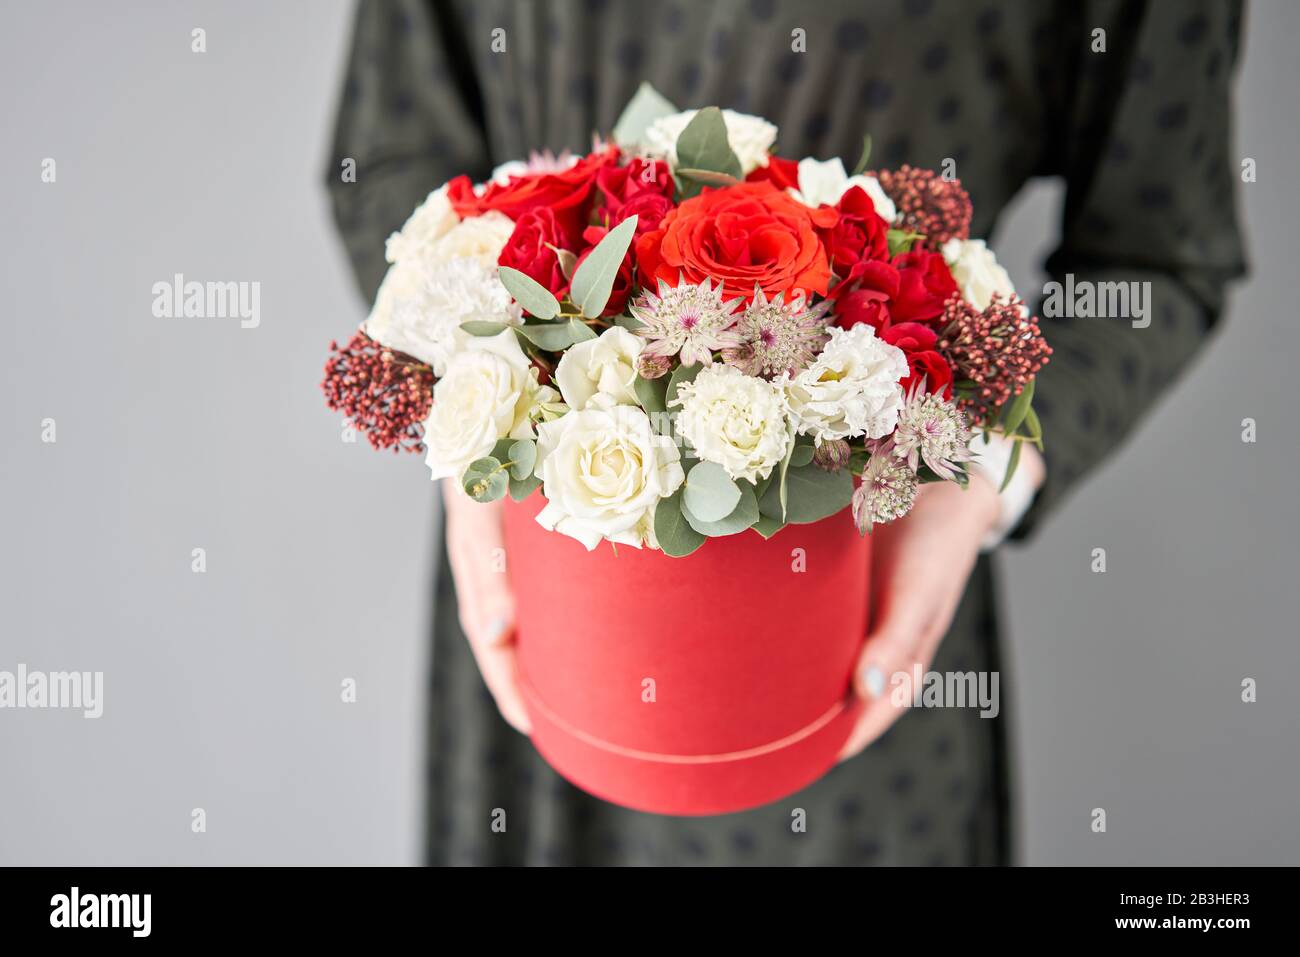 Bouquet floral rouge et blanc dans une boîte ronde. Boutique européenne de fleurs. Bouquet de belles fleurs mixtes dans la main de la femme. Banque D'Images